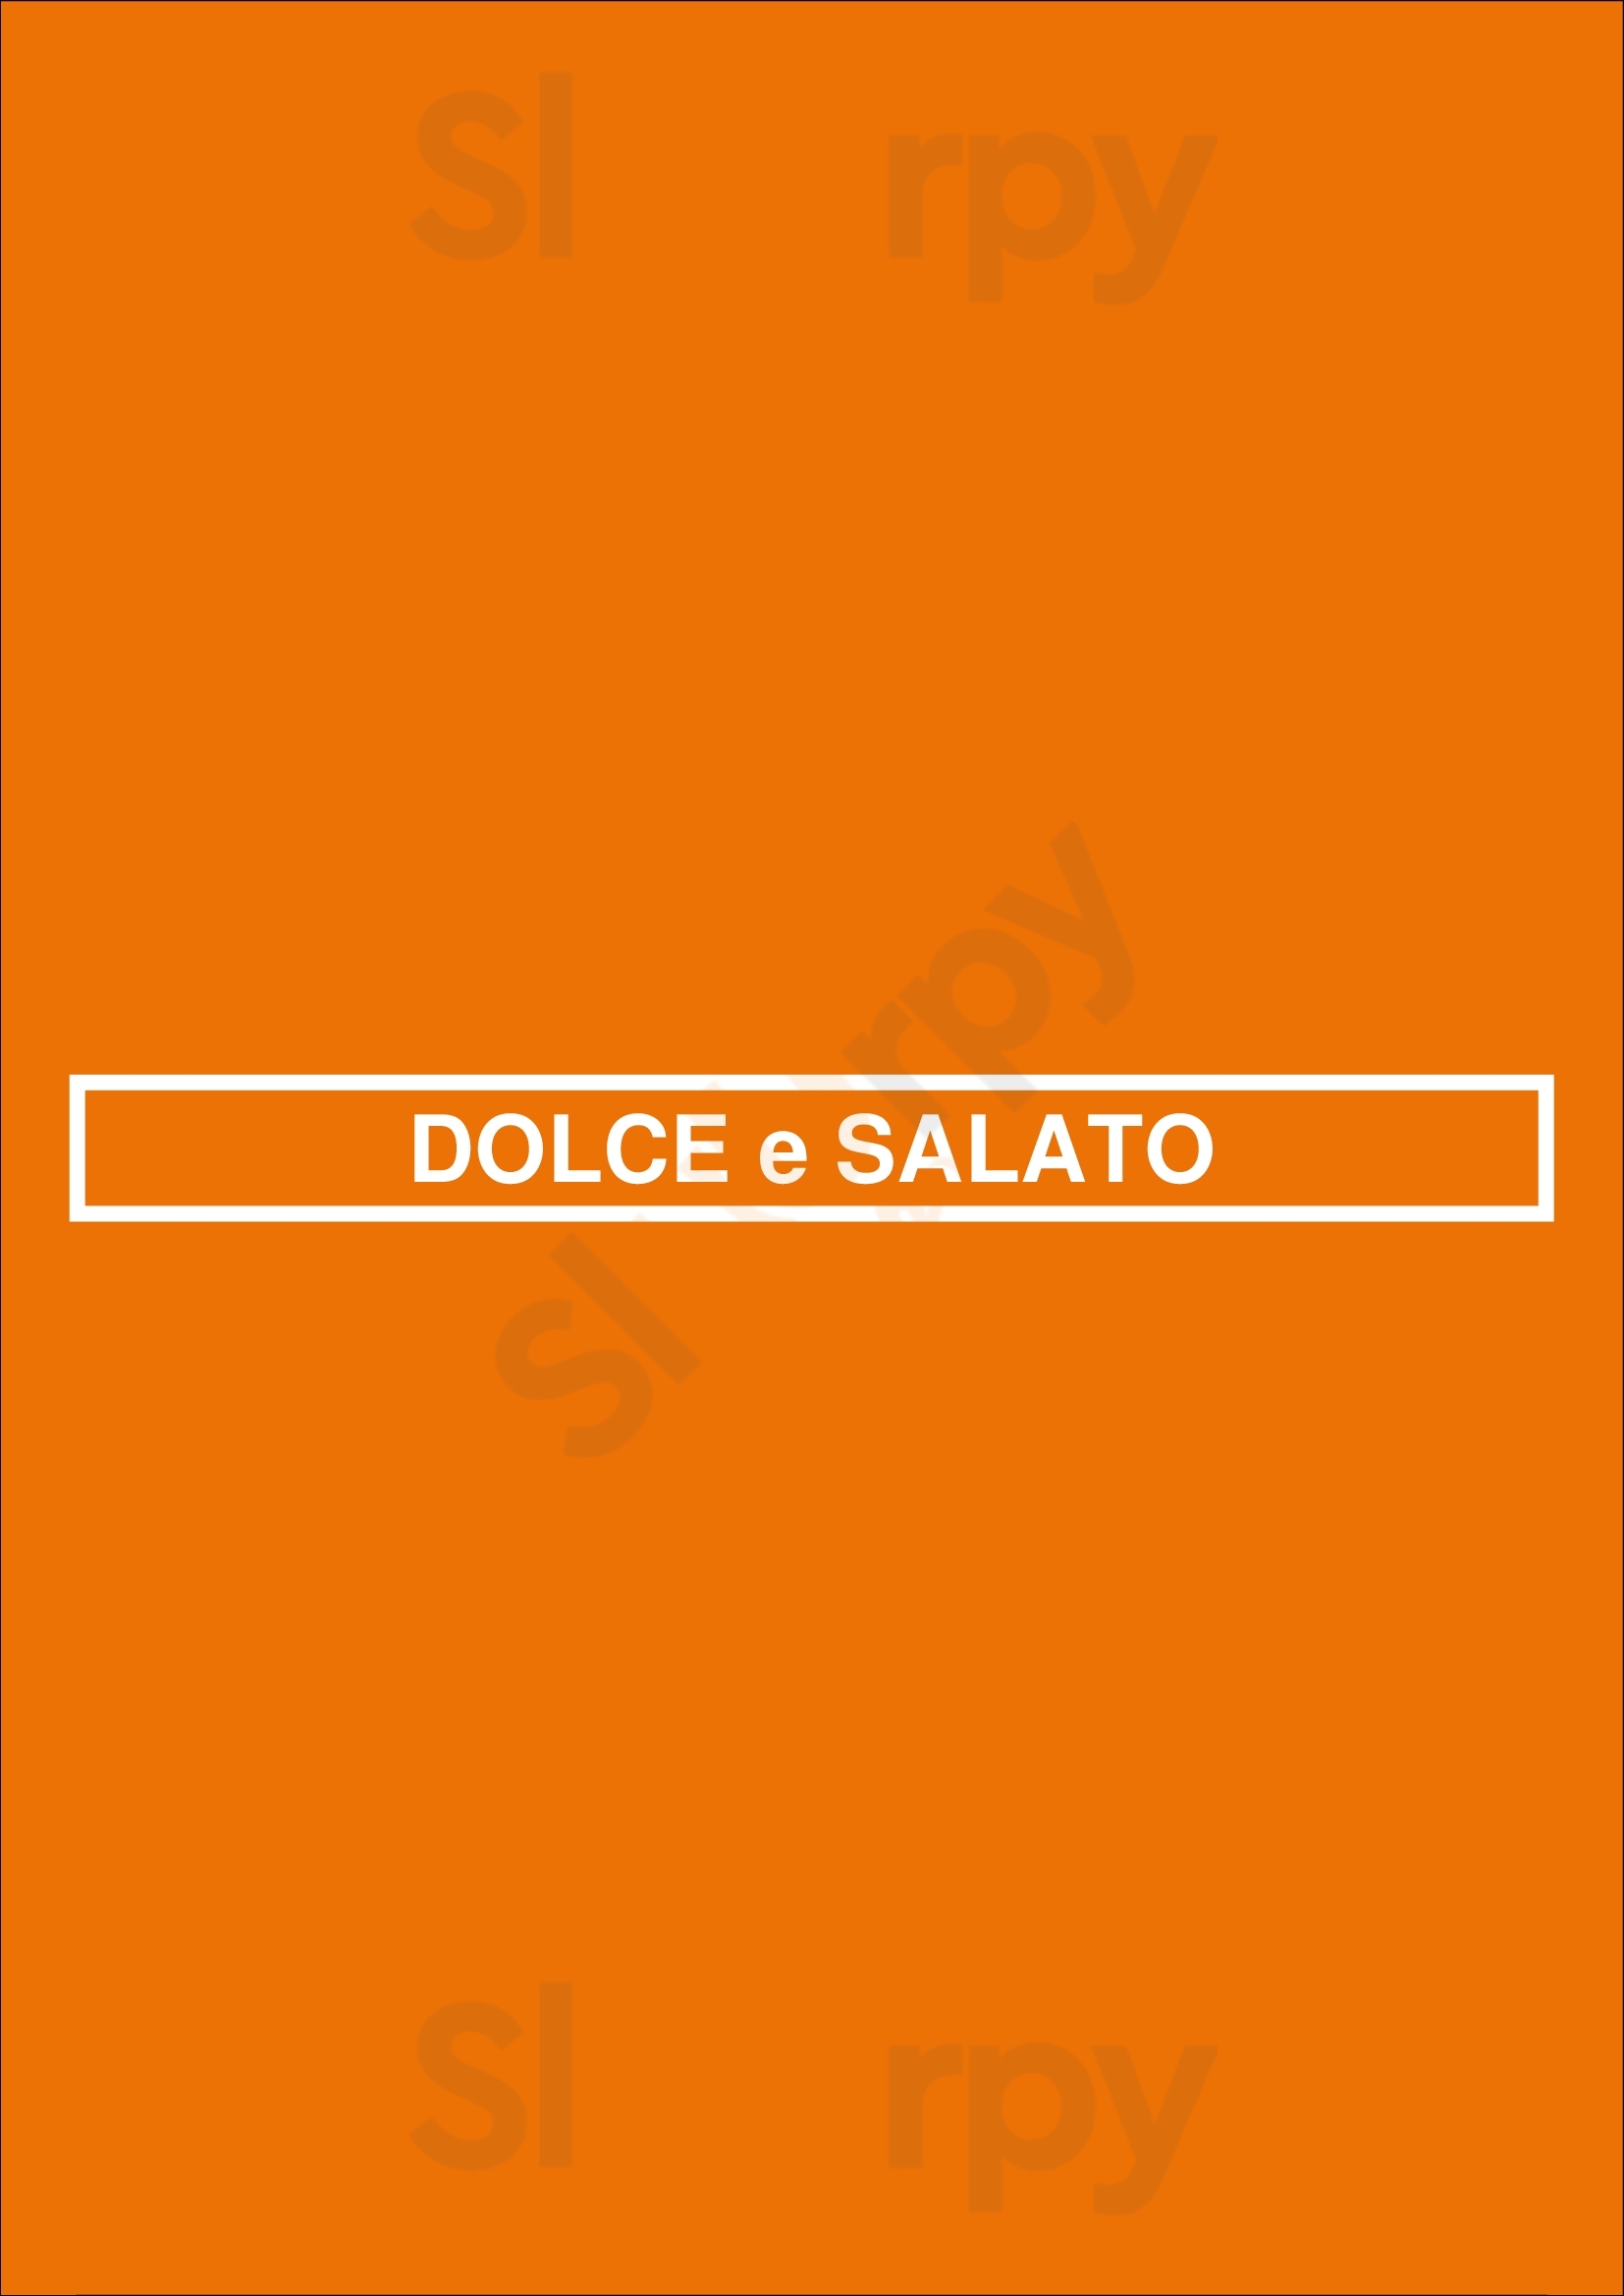 Dolce E Salato Sint-Pieters-Leeuw Menu - 1